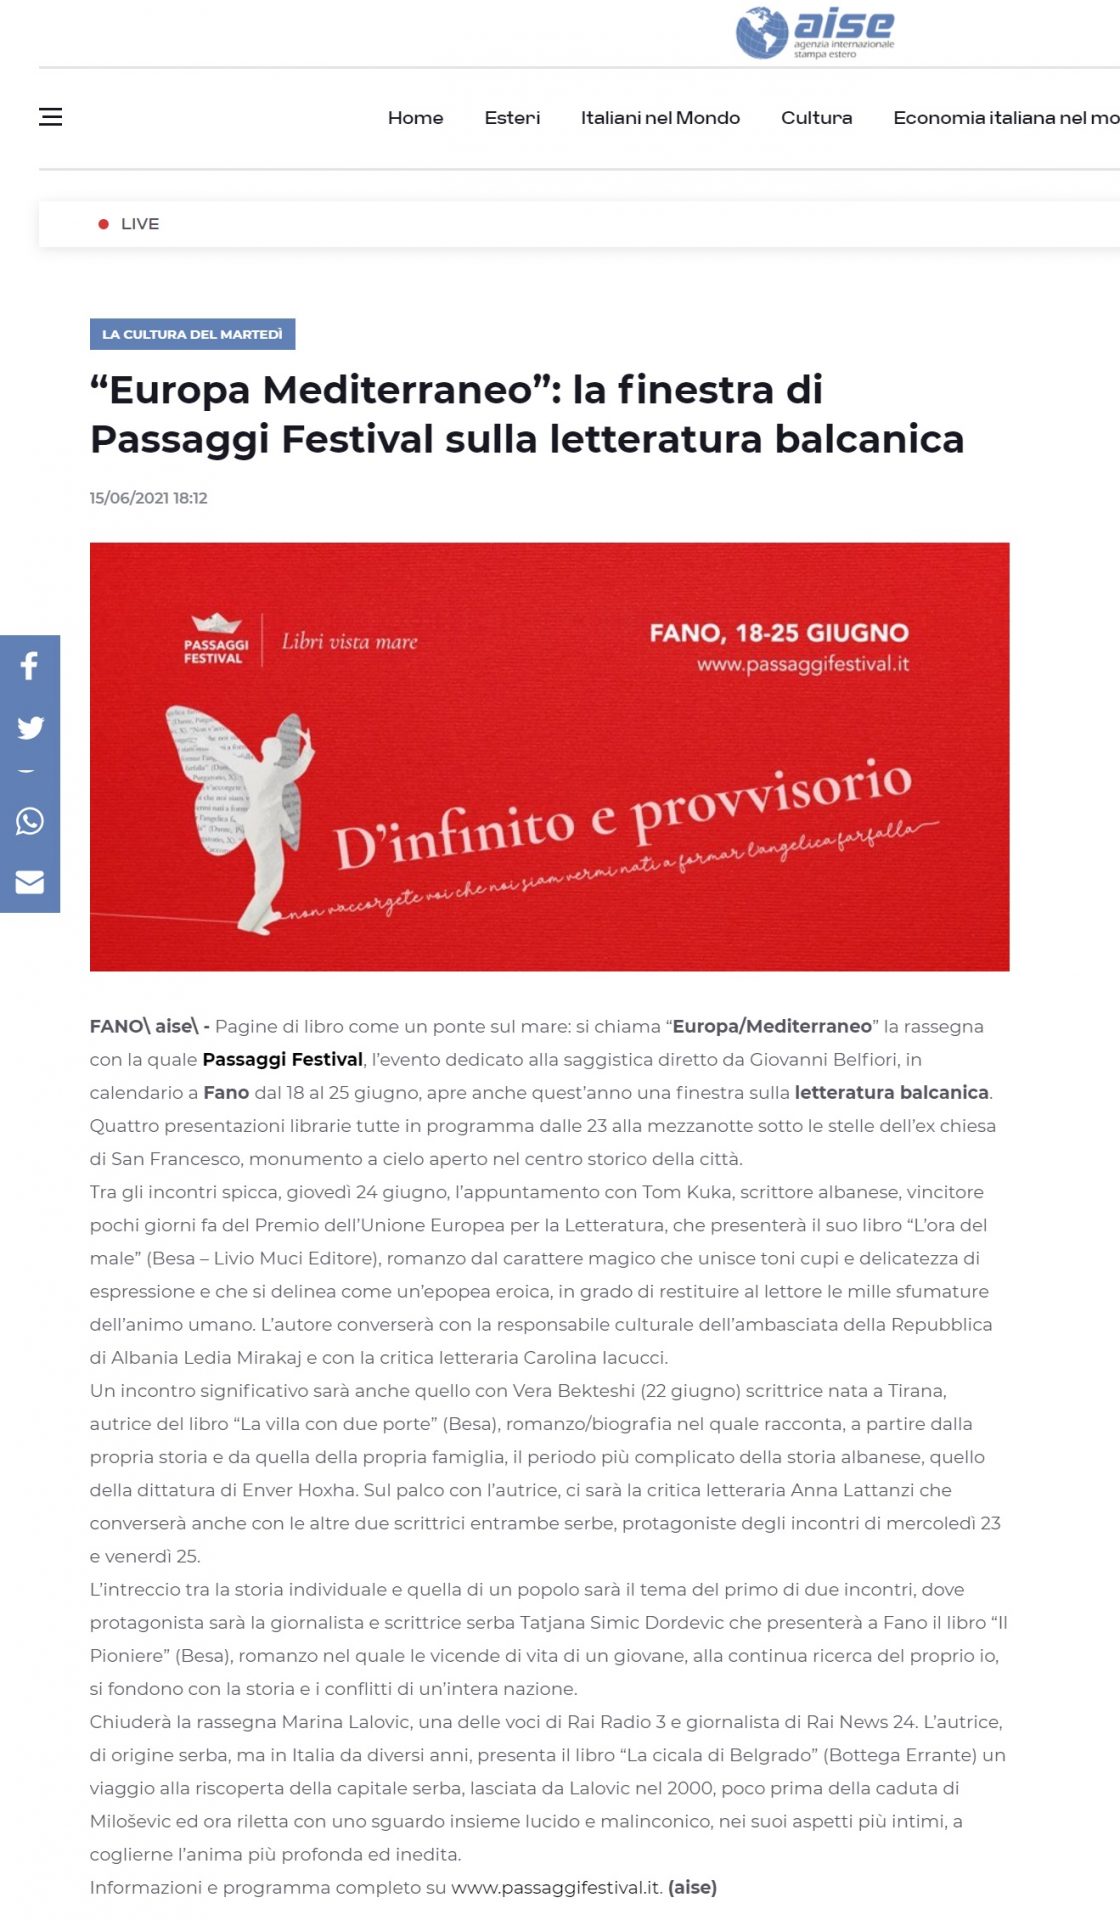 aise-europa-mediterraneo-la-finestra-di-passaggi-festival-sulla-letteratura-balcanica